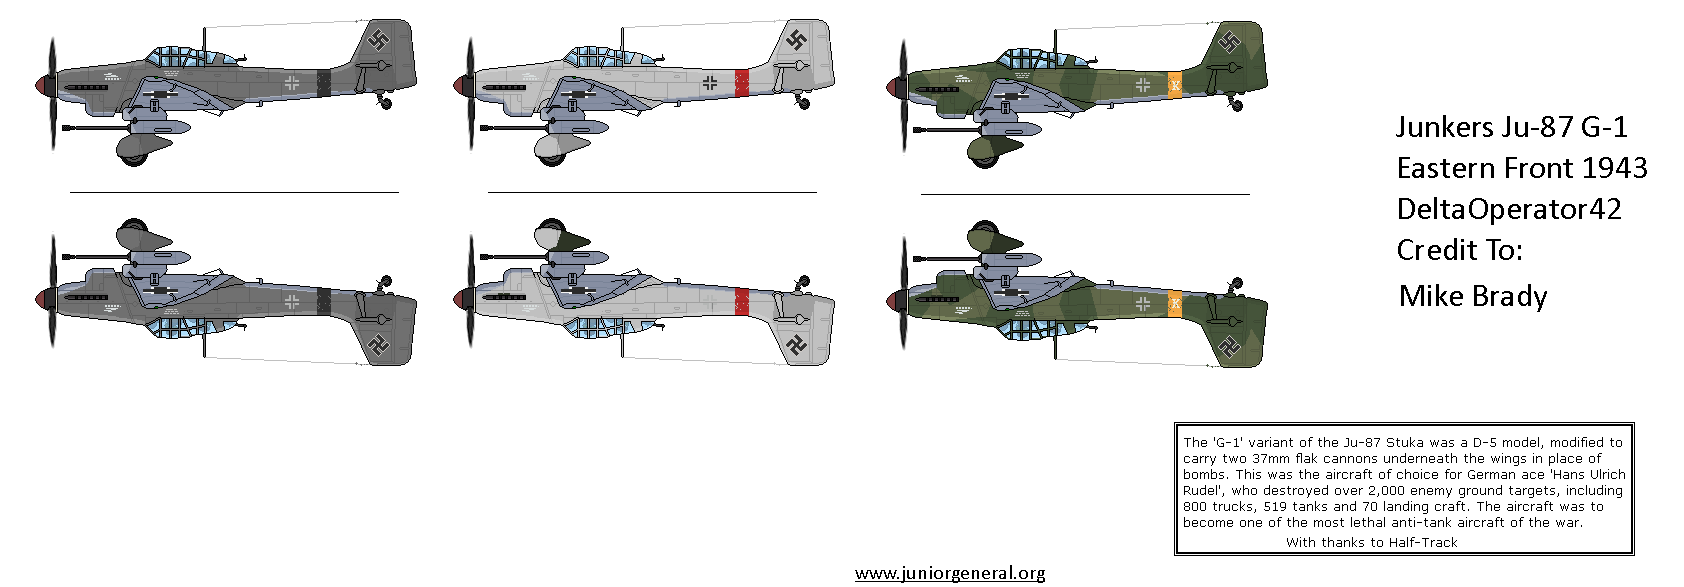 Junkers Ju-87 G-1